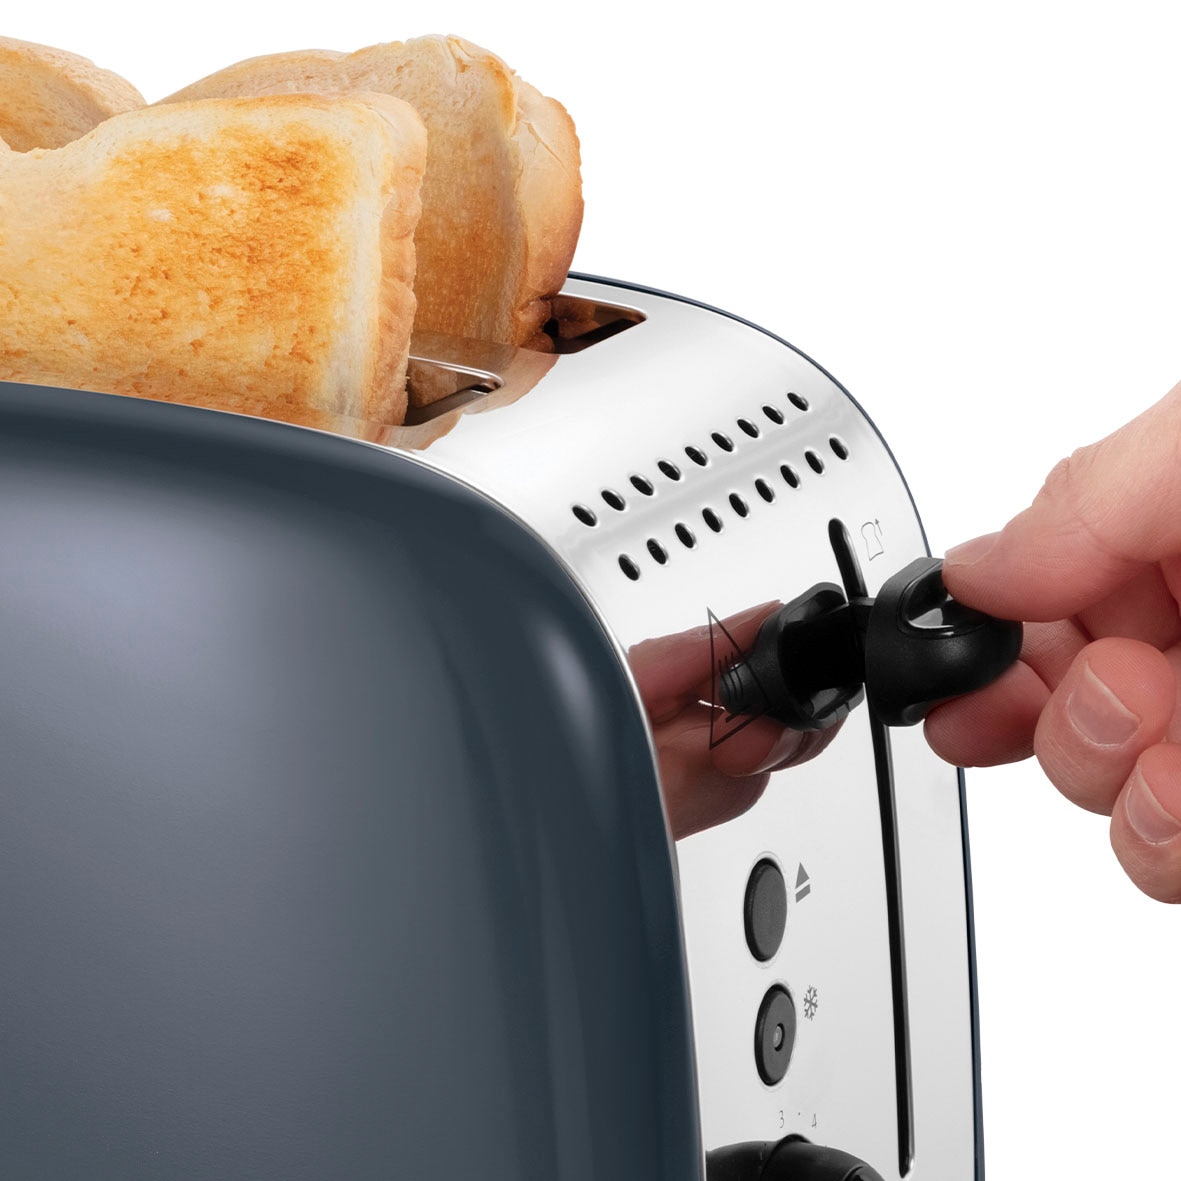 RUSSELL HOBBS Toaster »Colours Plus 26552-56«, 2 lange Schlitze, für 2  Scheiben, 1600 W mit 3 Jahren XXL Garantie